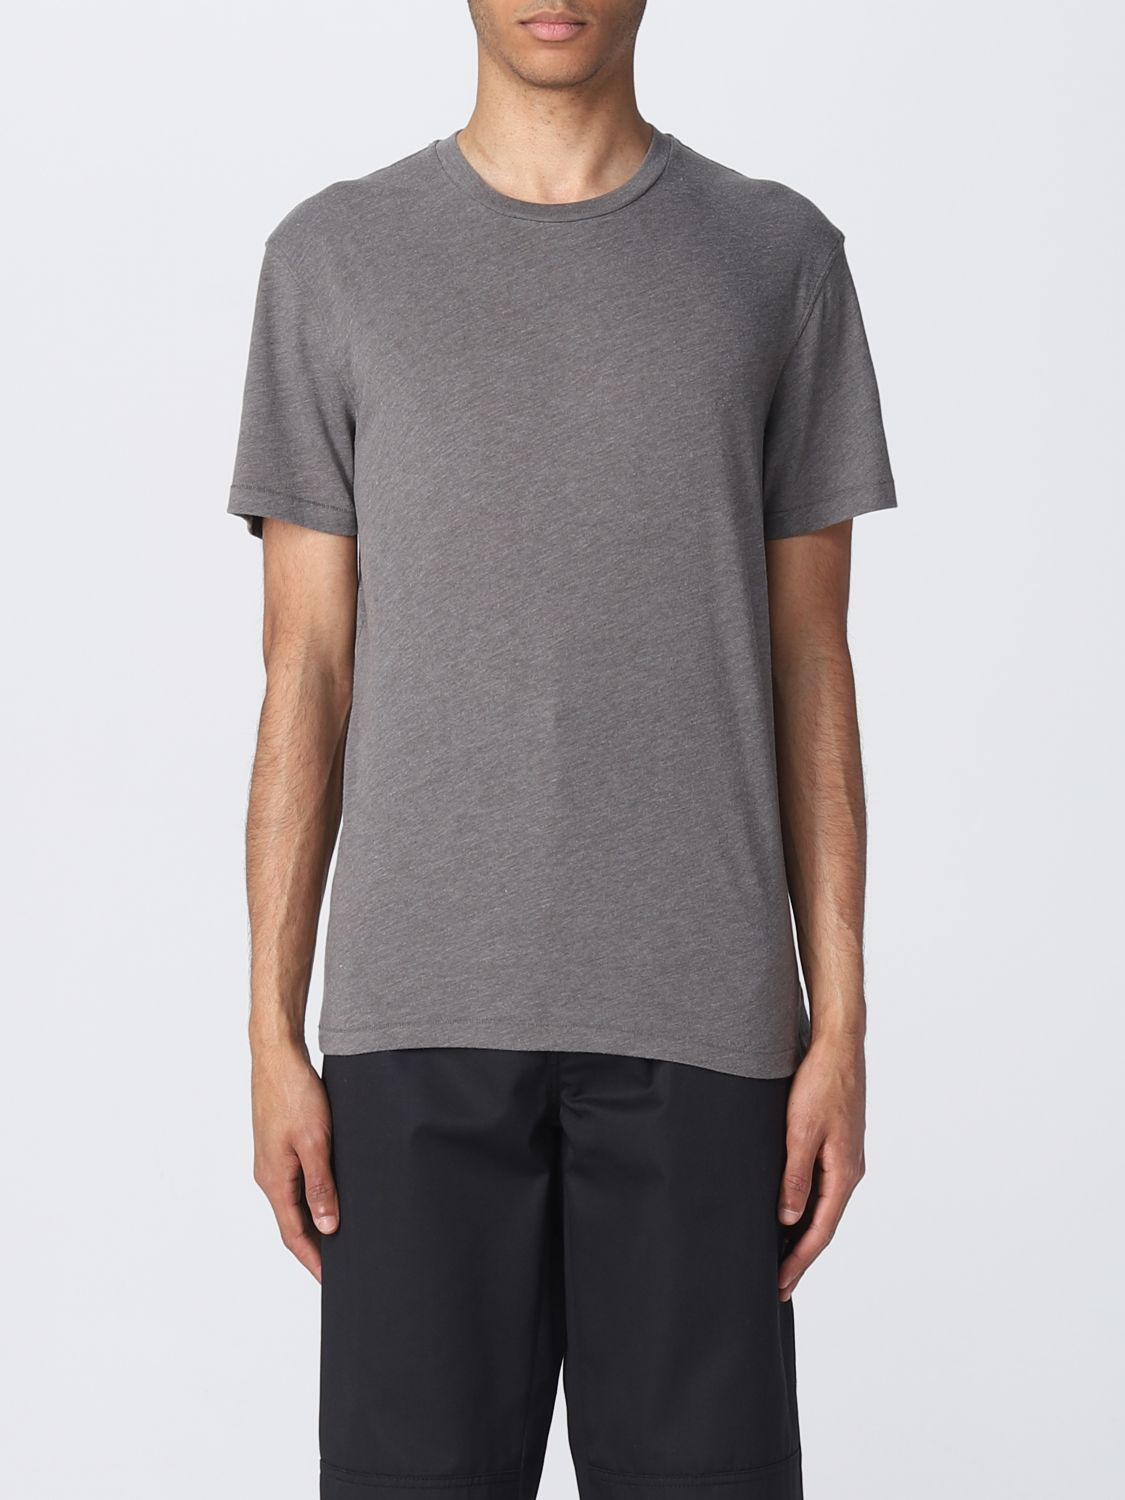 Tom Ford T-shirt  Herren Farbe Grau 1 In Grey 1